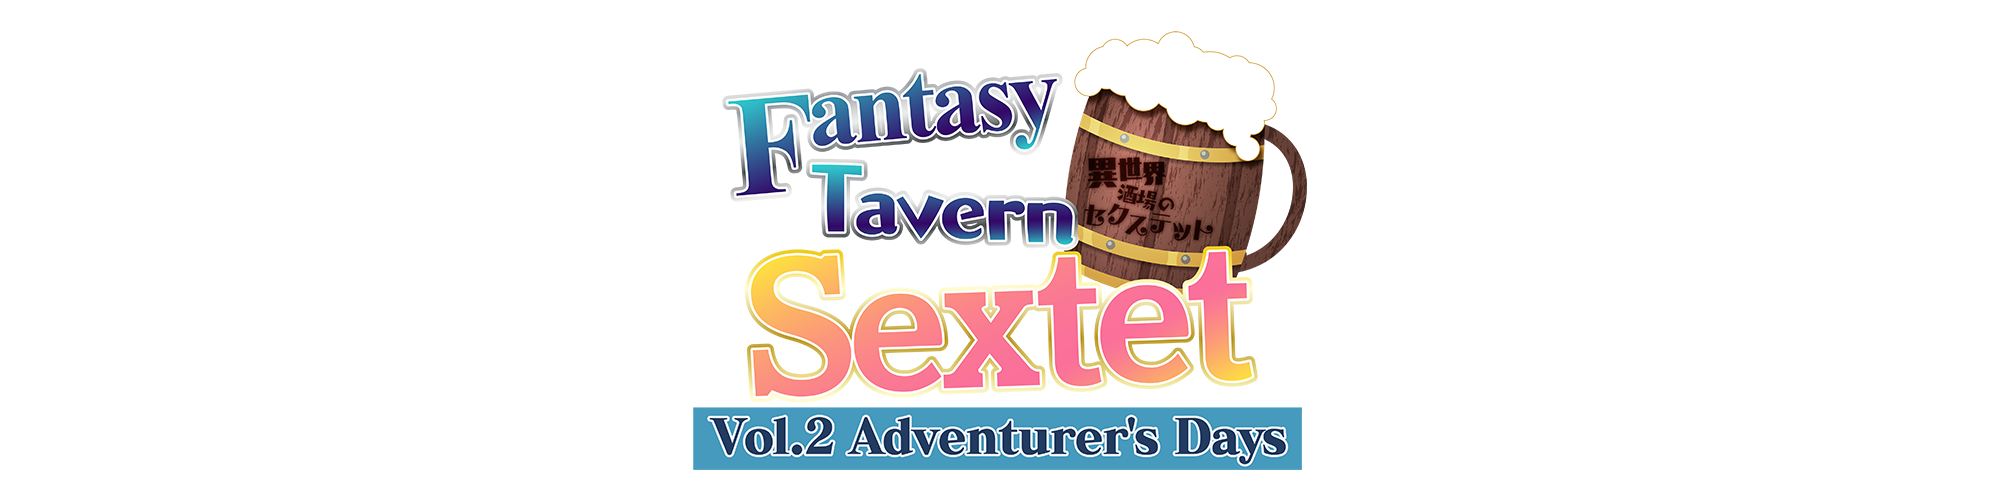 Fantasy Tavern Sextet -Vol.2 Adventurer’s Days-